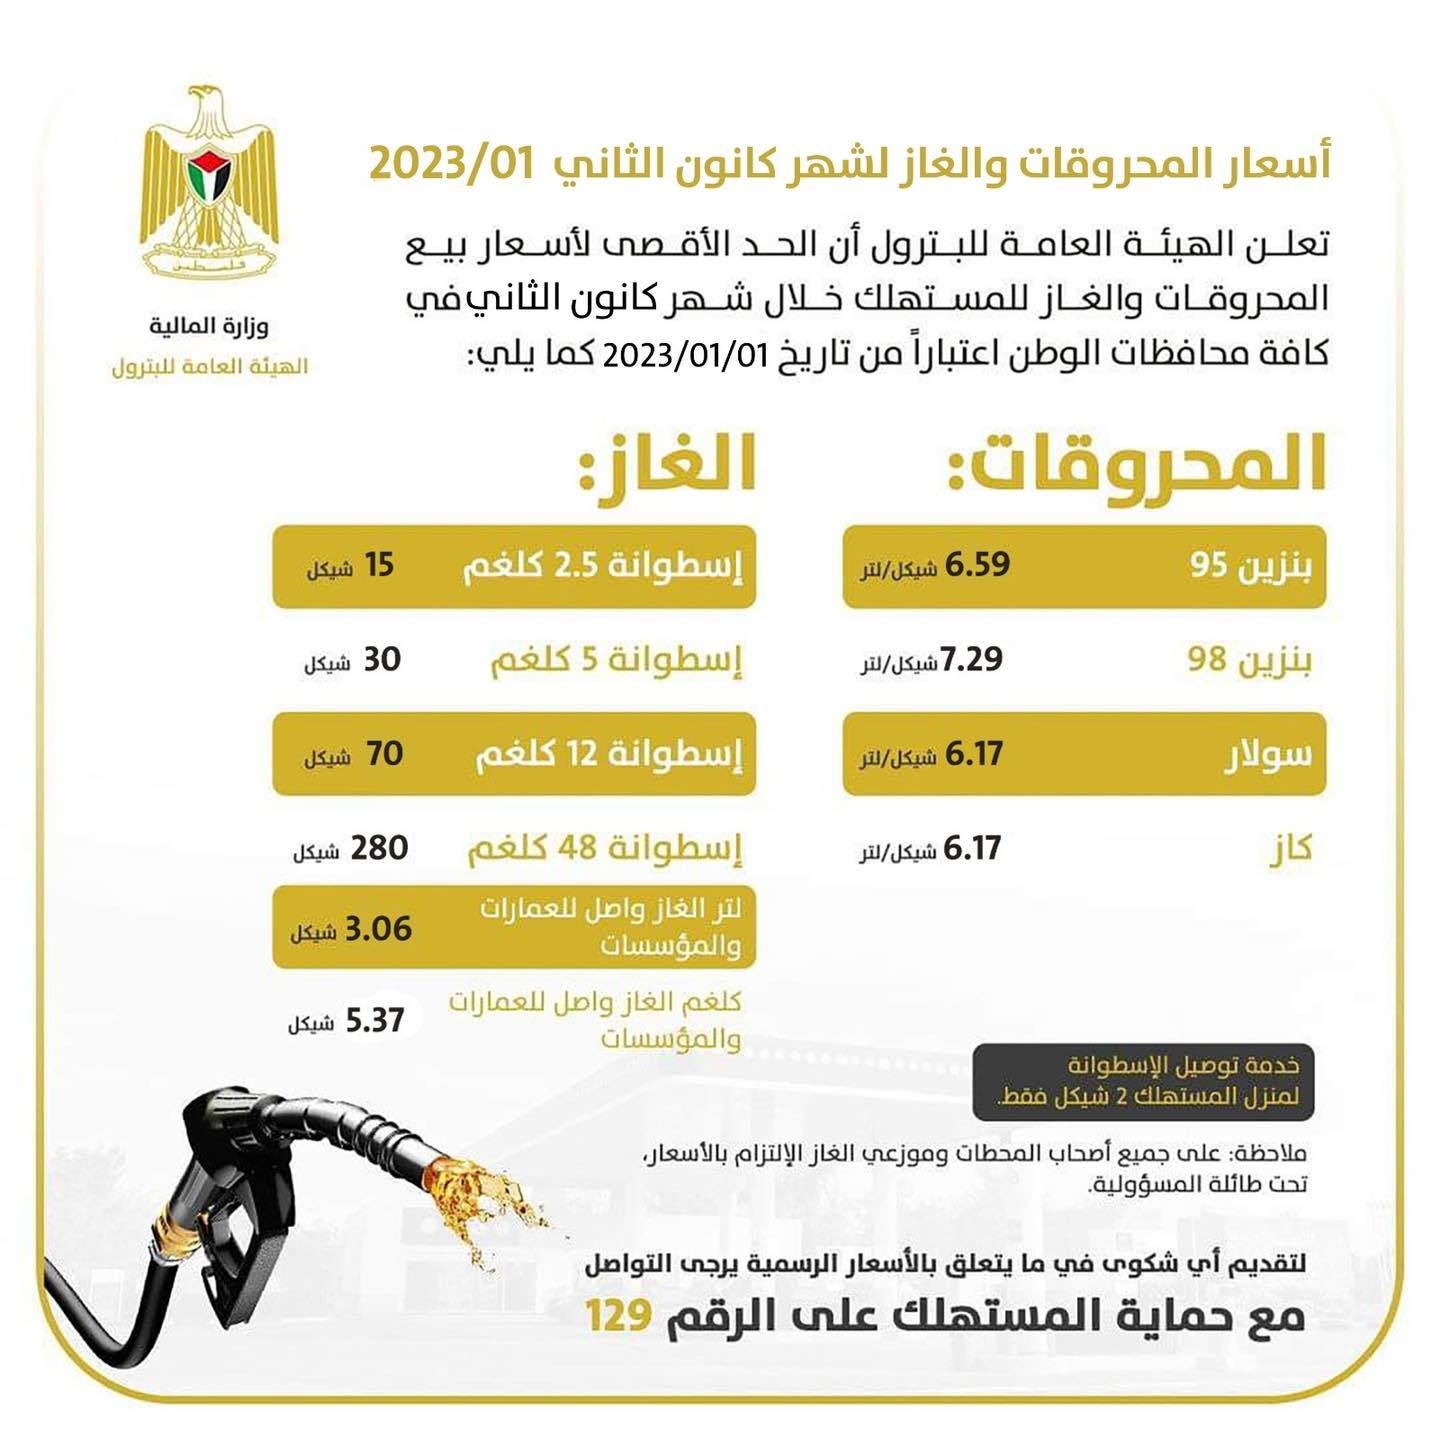 طالع: أسعار المحروقات والغاز في فلسطين لشهر يناير 2023